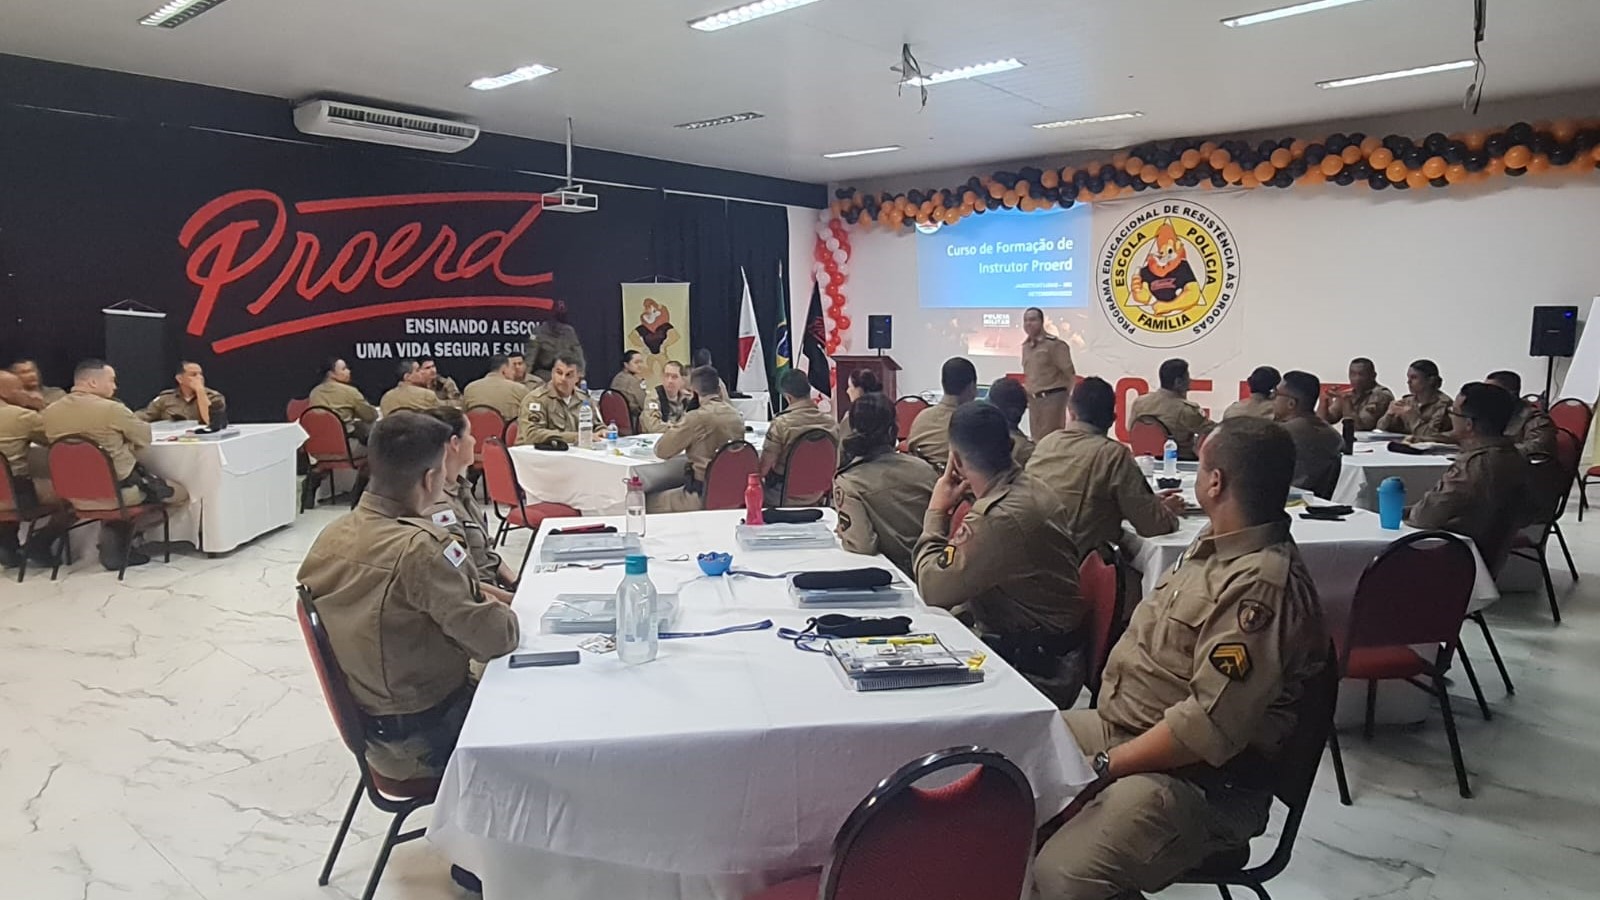 PROERD D.A.R.E. Officer Training 2022, Minas Gerais, Brazil